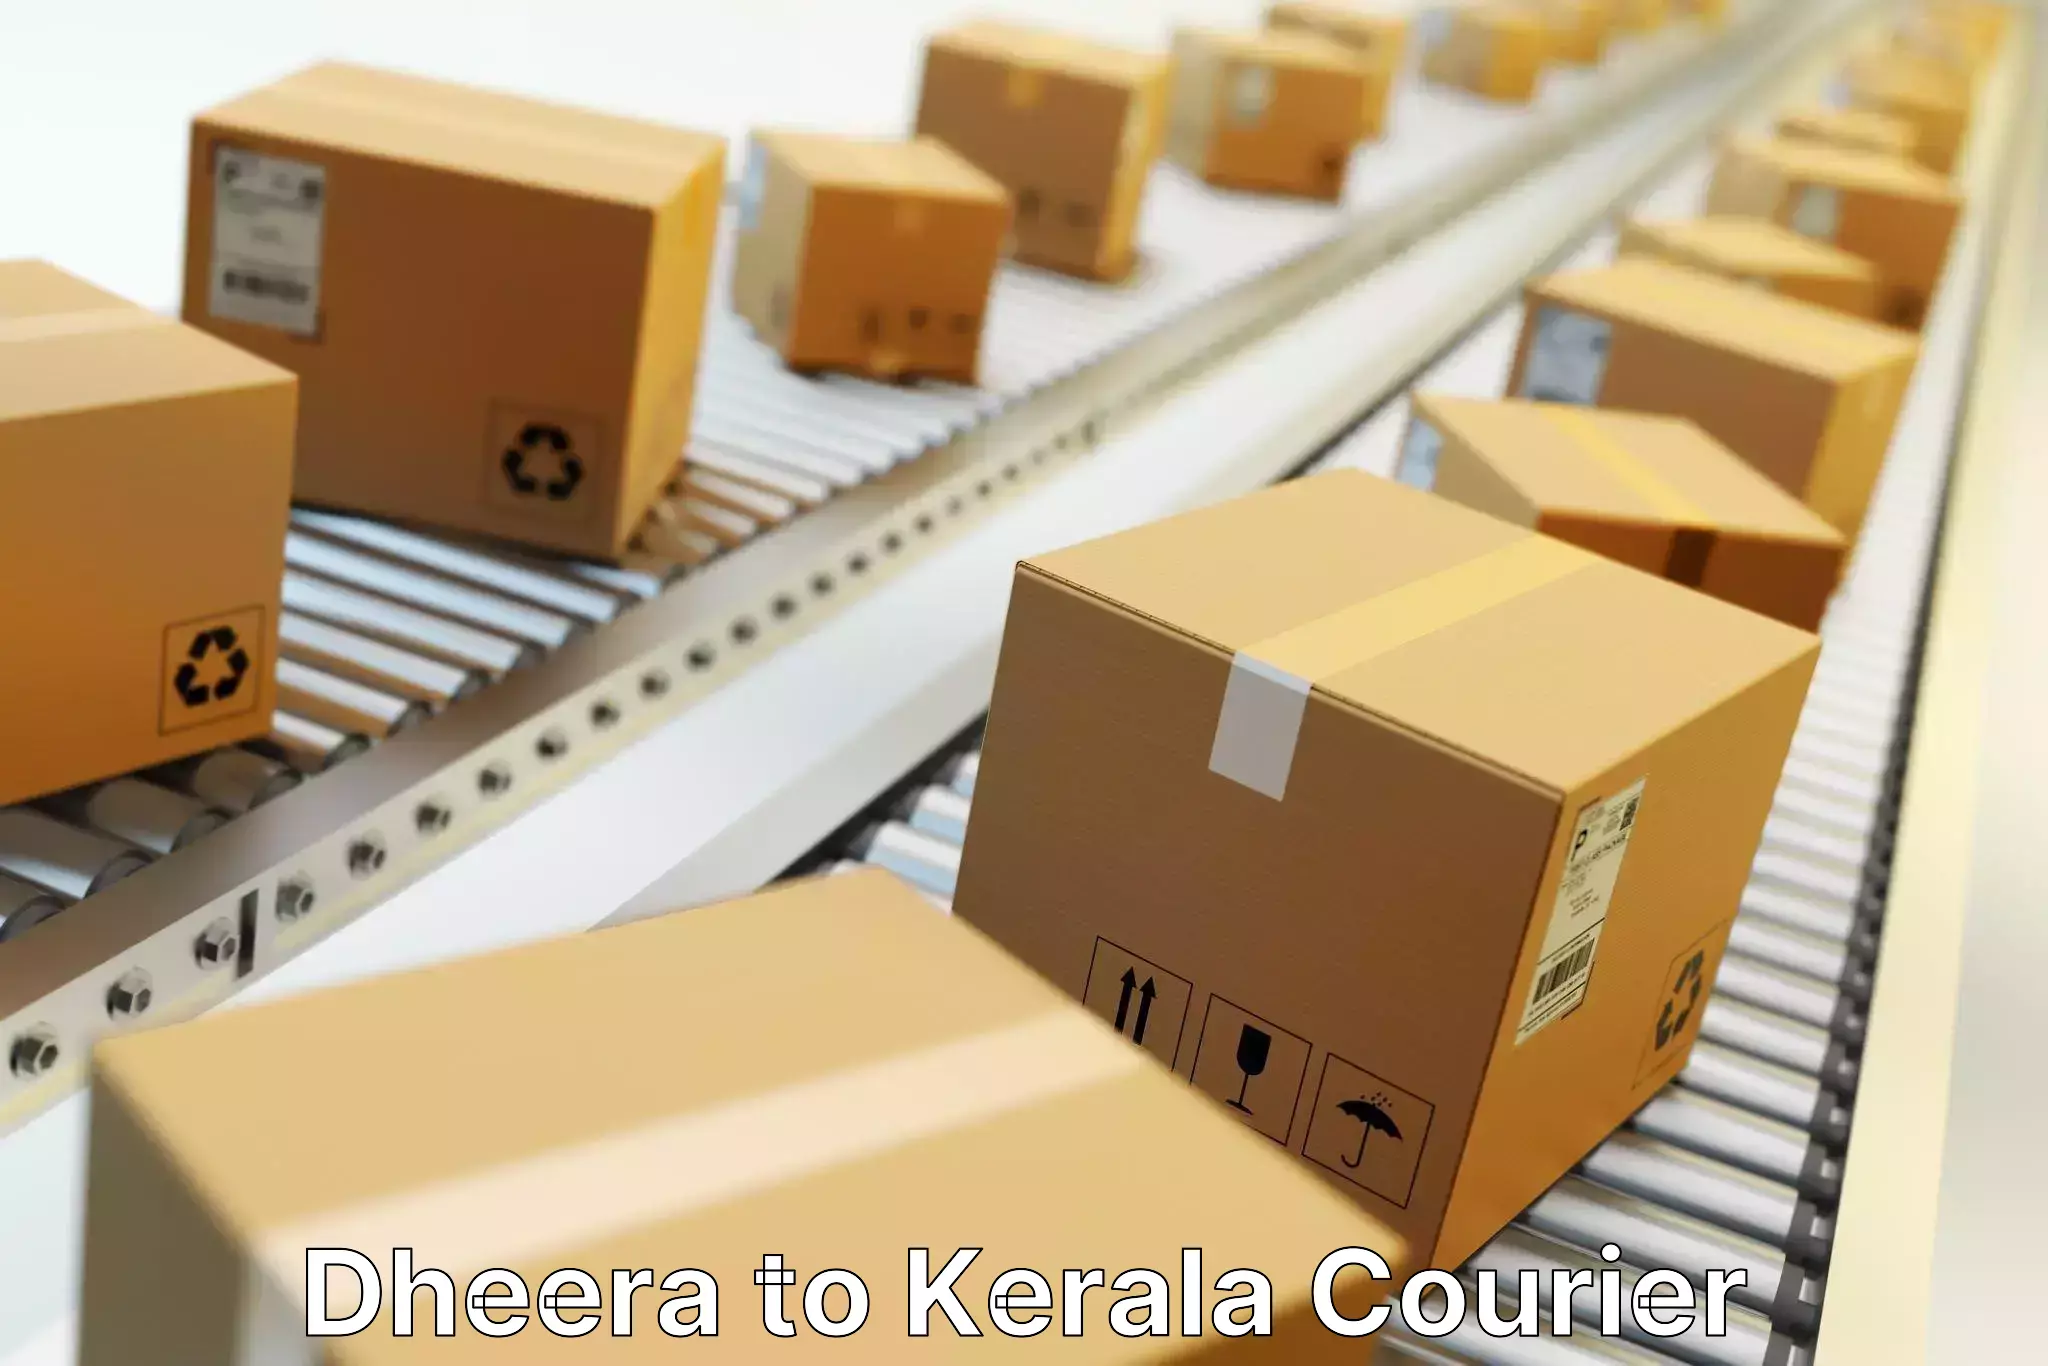 Seamless shipping experience Dheera to Parakkadavu